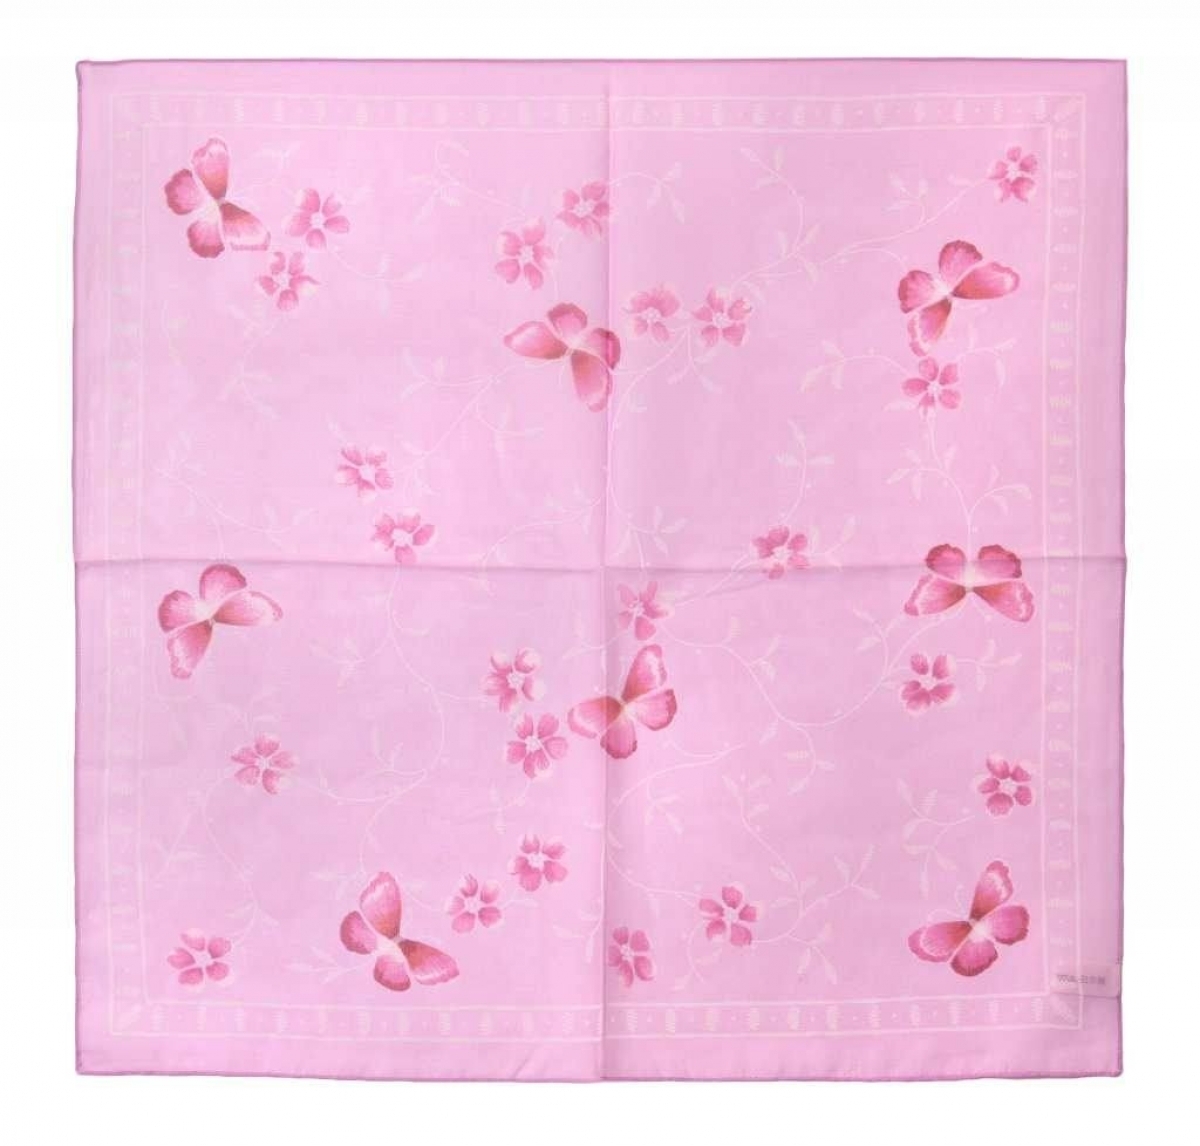 Песни розовый платочек. Розовый платок. Розовый платочек. Платочки с бабочками. Розовый платочек носовой.